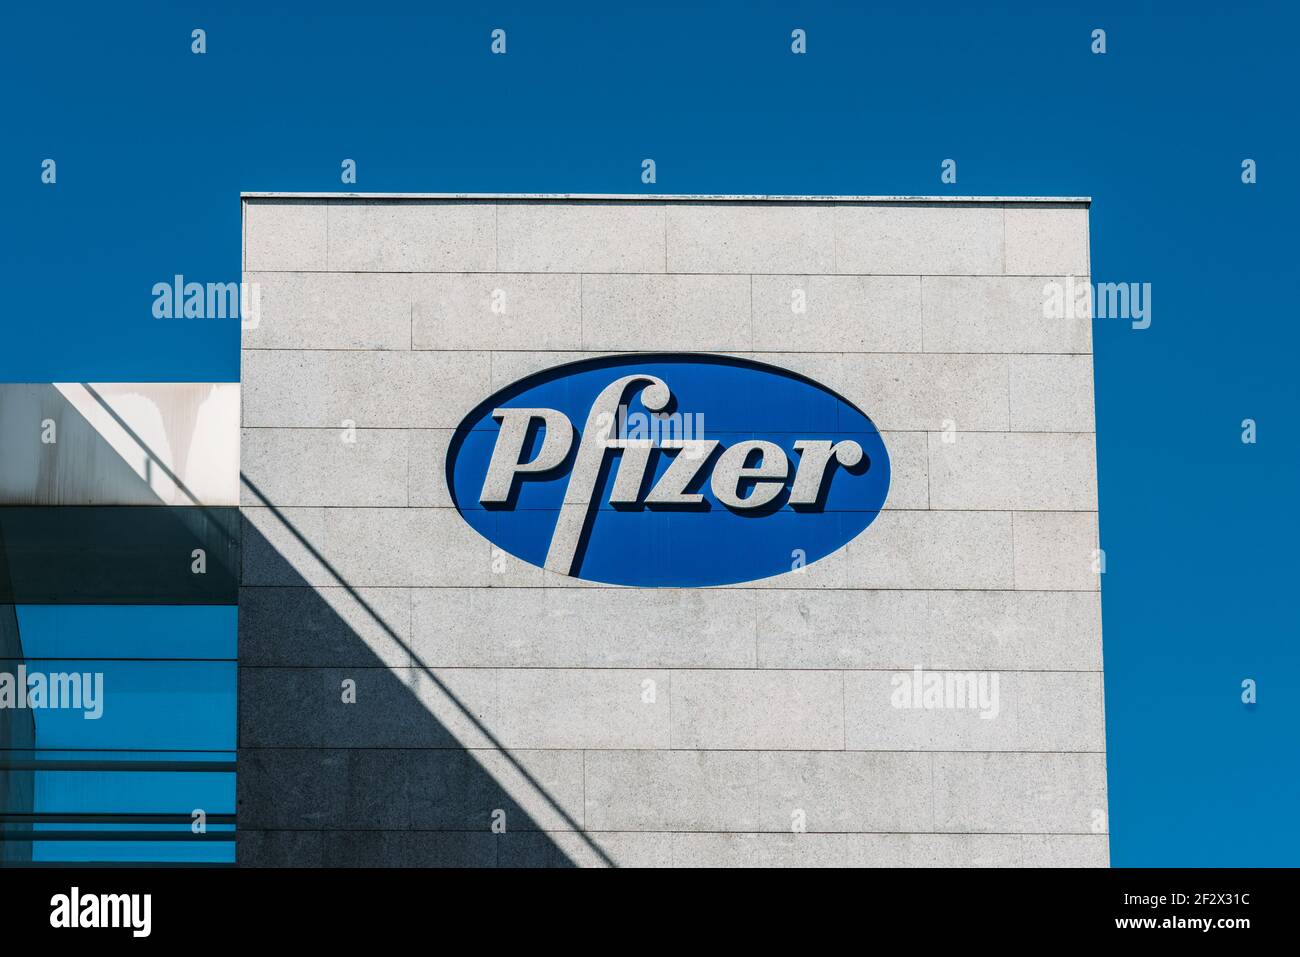 Madrid, Espagne - 13 mars 2021 : logo Pfizer sur le bâtiment Pfizer. Pfizer est une société pharmaceutique américaine Banque D'Images